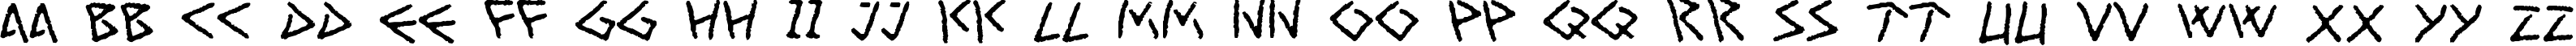 Пример написания английского алфавита шрифтом Art Greco